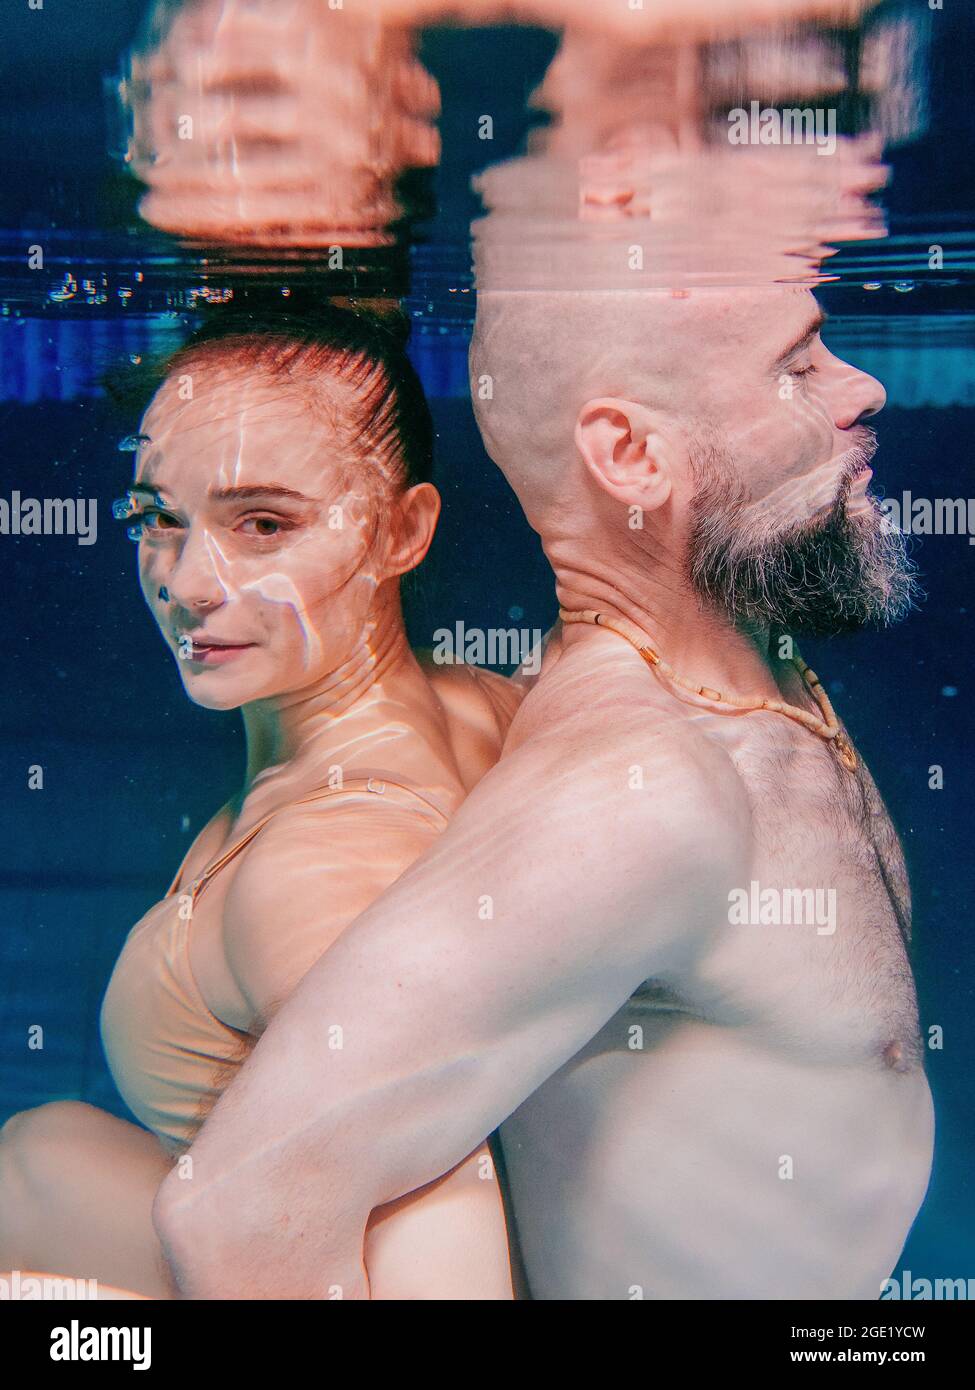 ritratto subacqueo della danza atletica, sportiva e fare yoga asana coppia (uomo e donna) sott'acqua in piscina Foto Stock